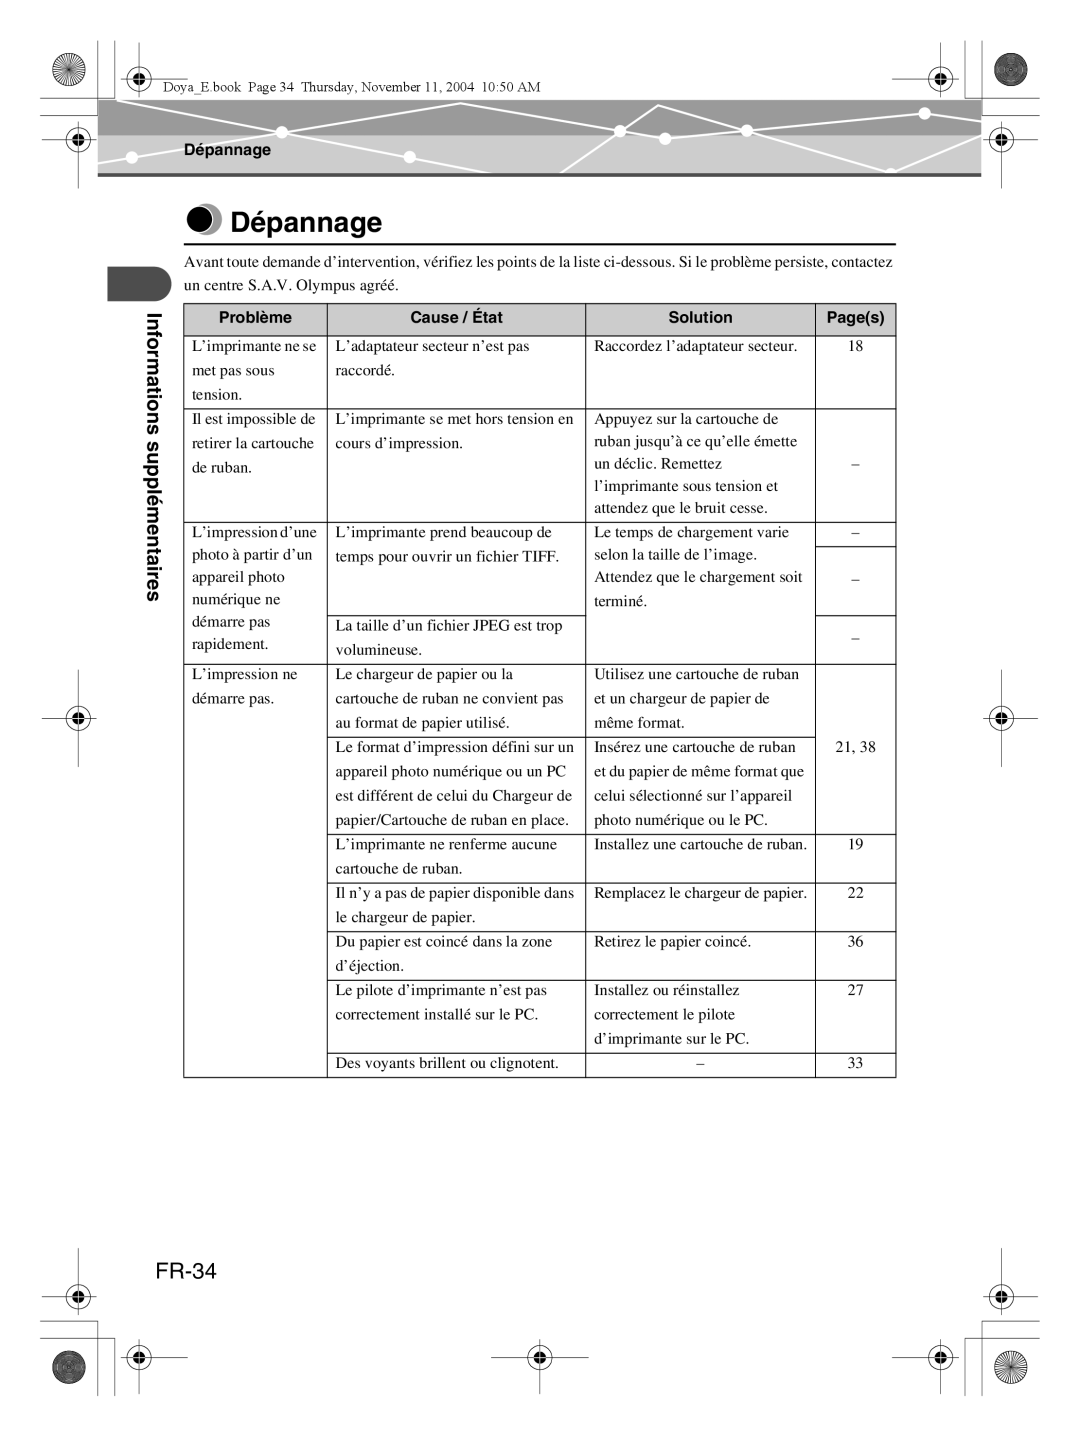 Olympus P-S100 user manual Dépannage, FR-34, Problème, Cause / État, Solution, Pages 